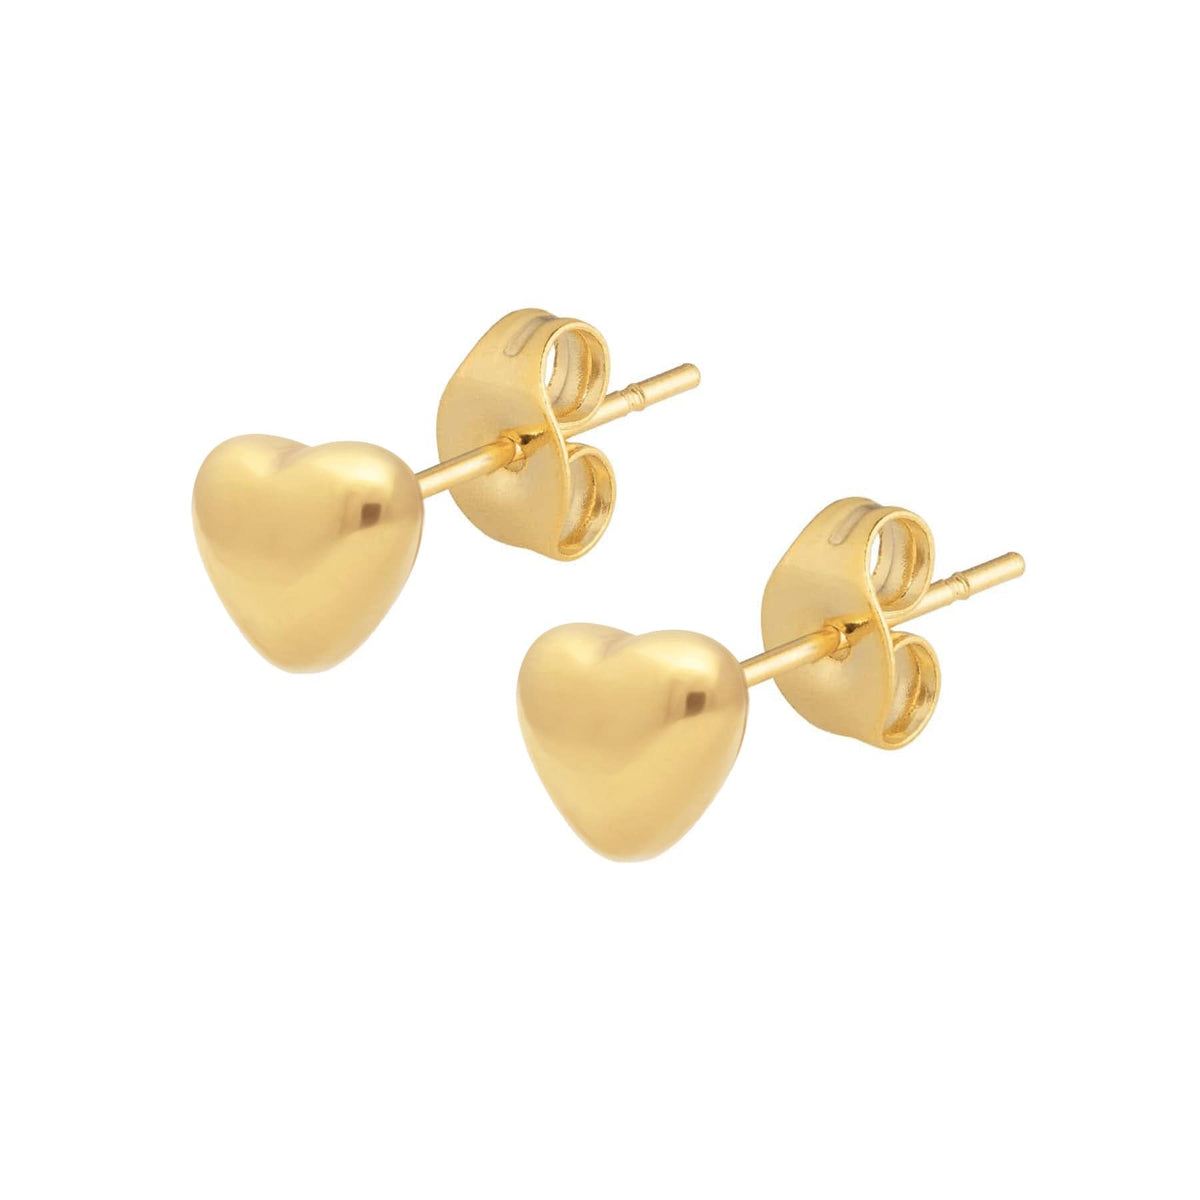 BohoMoon Stainless Steel Elegant Stud Earrings Gold